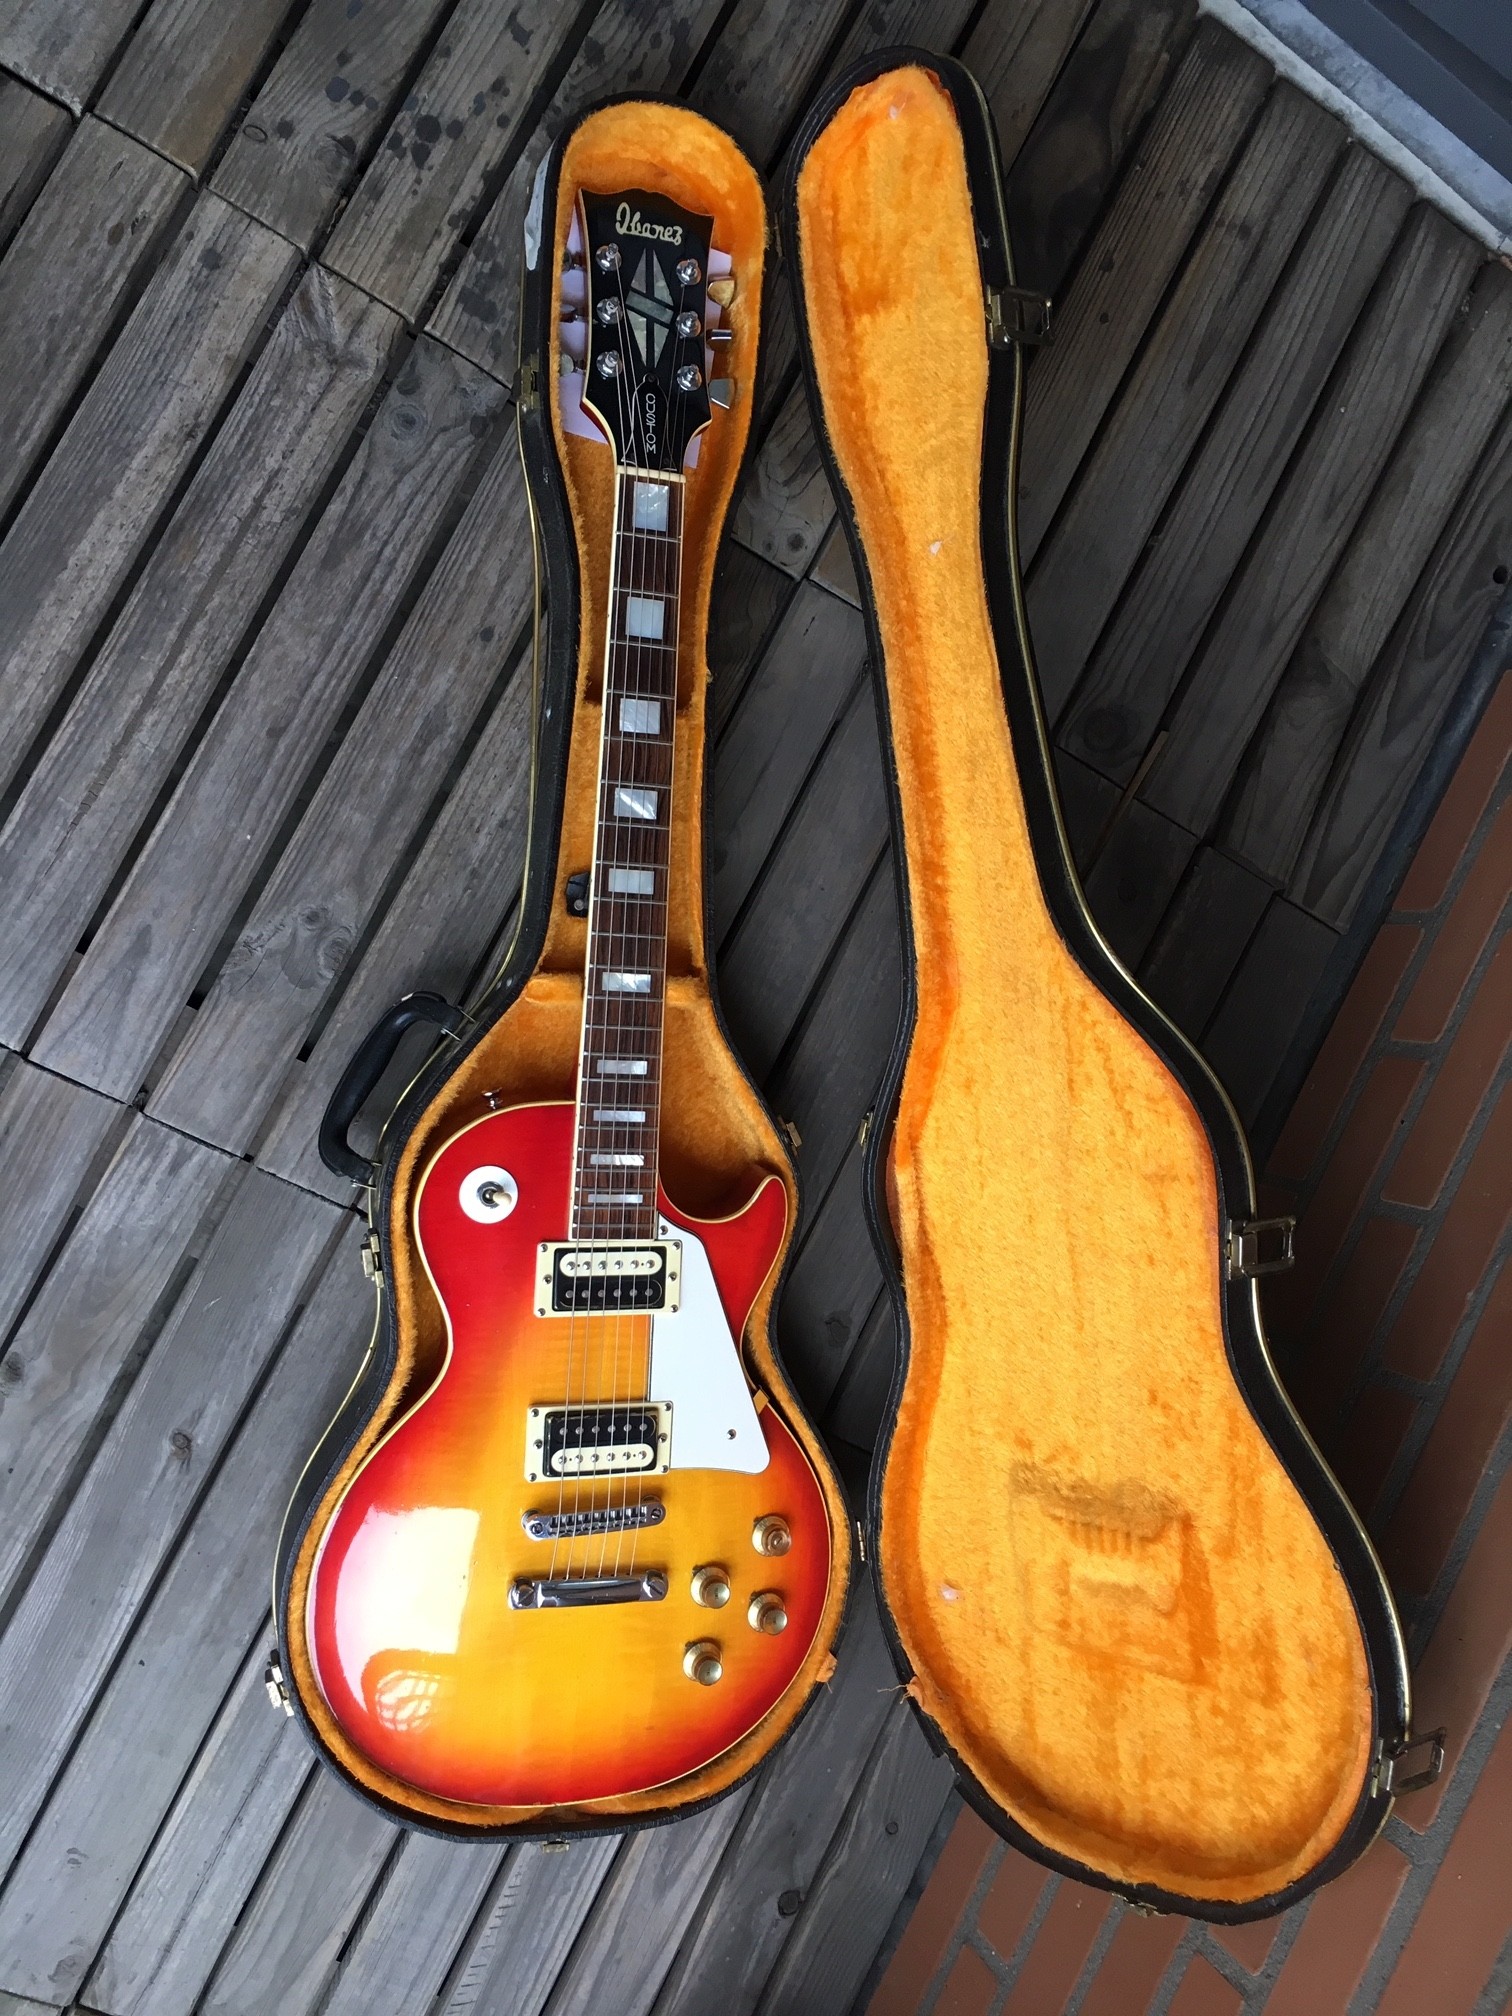 2386 | Ibanez Vintage Guitars